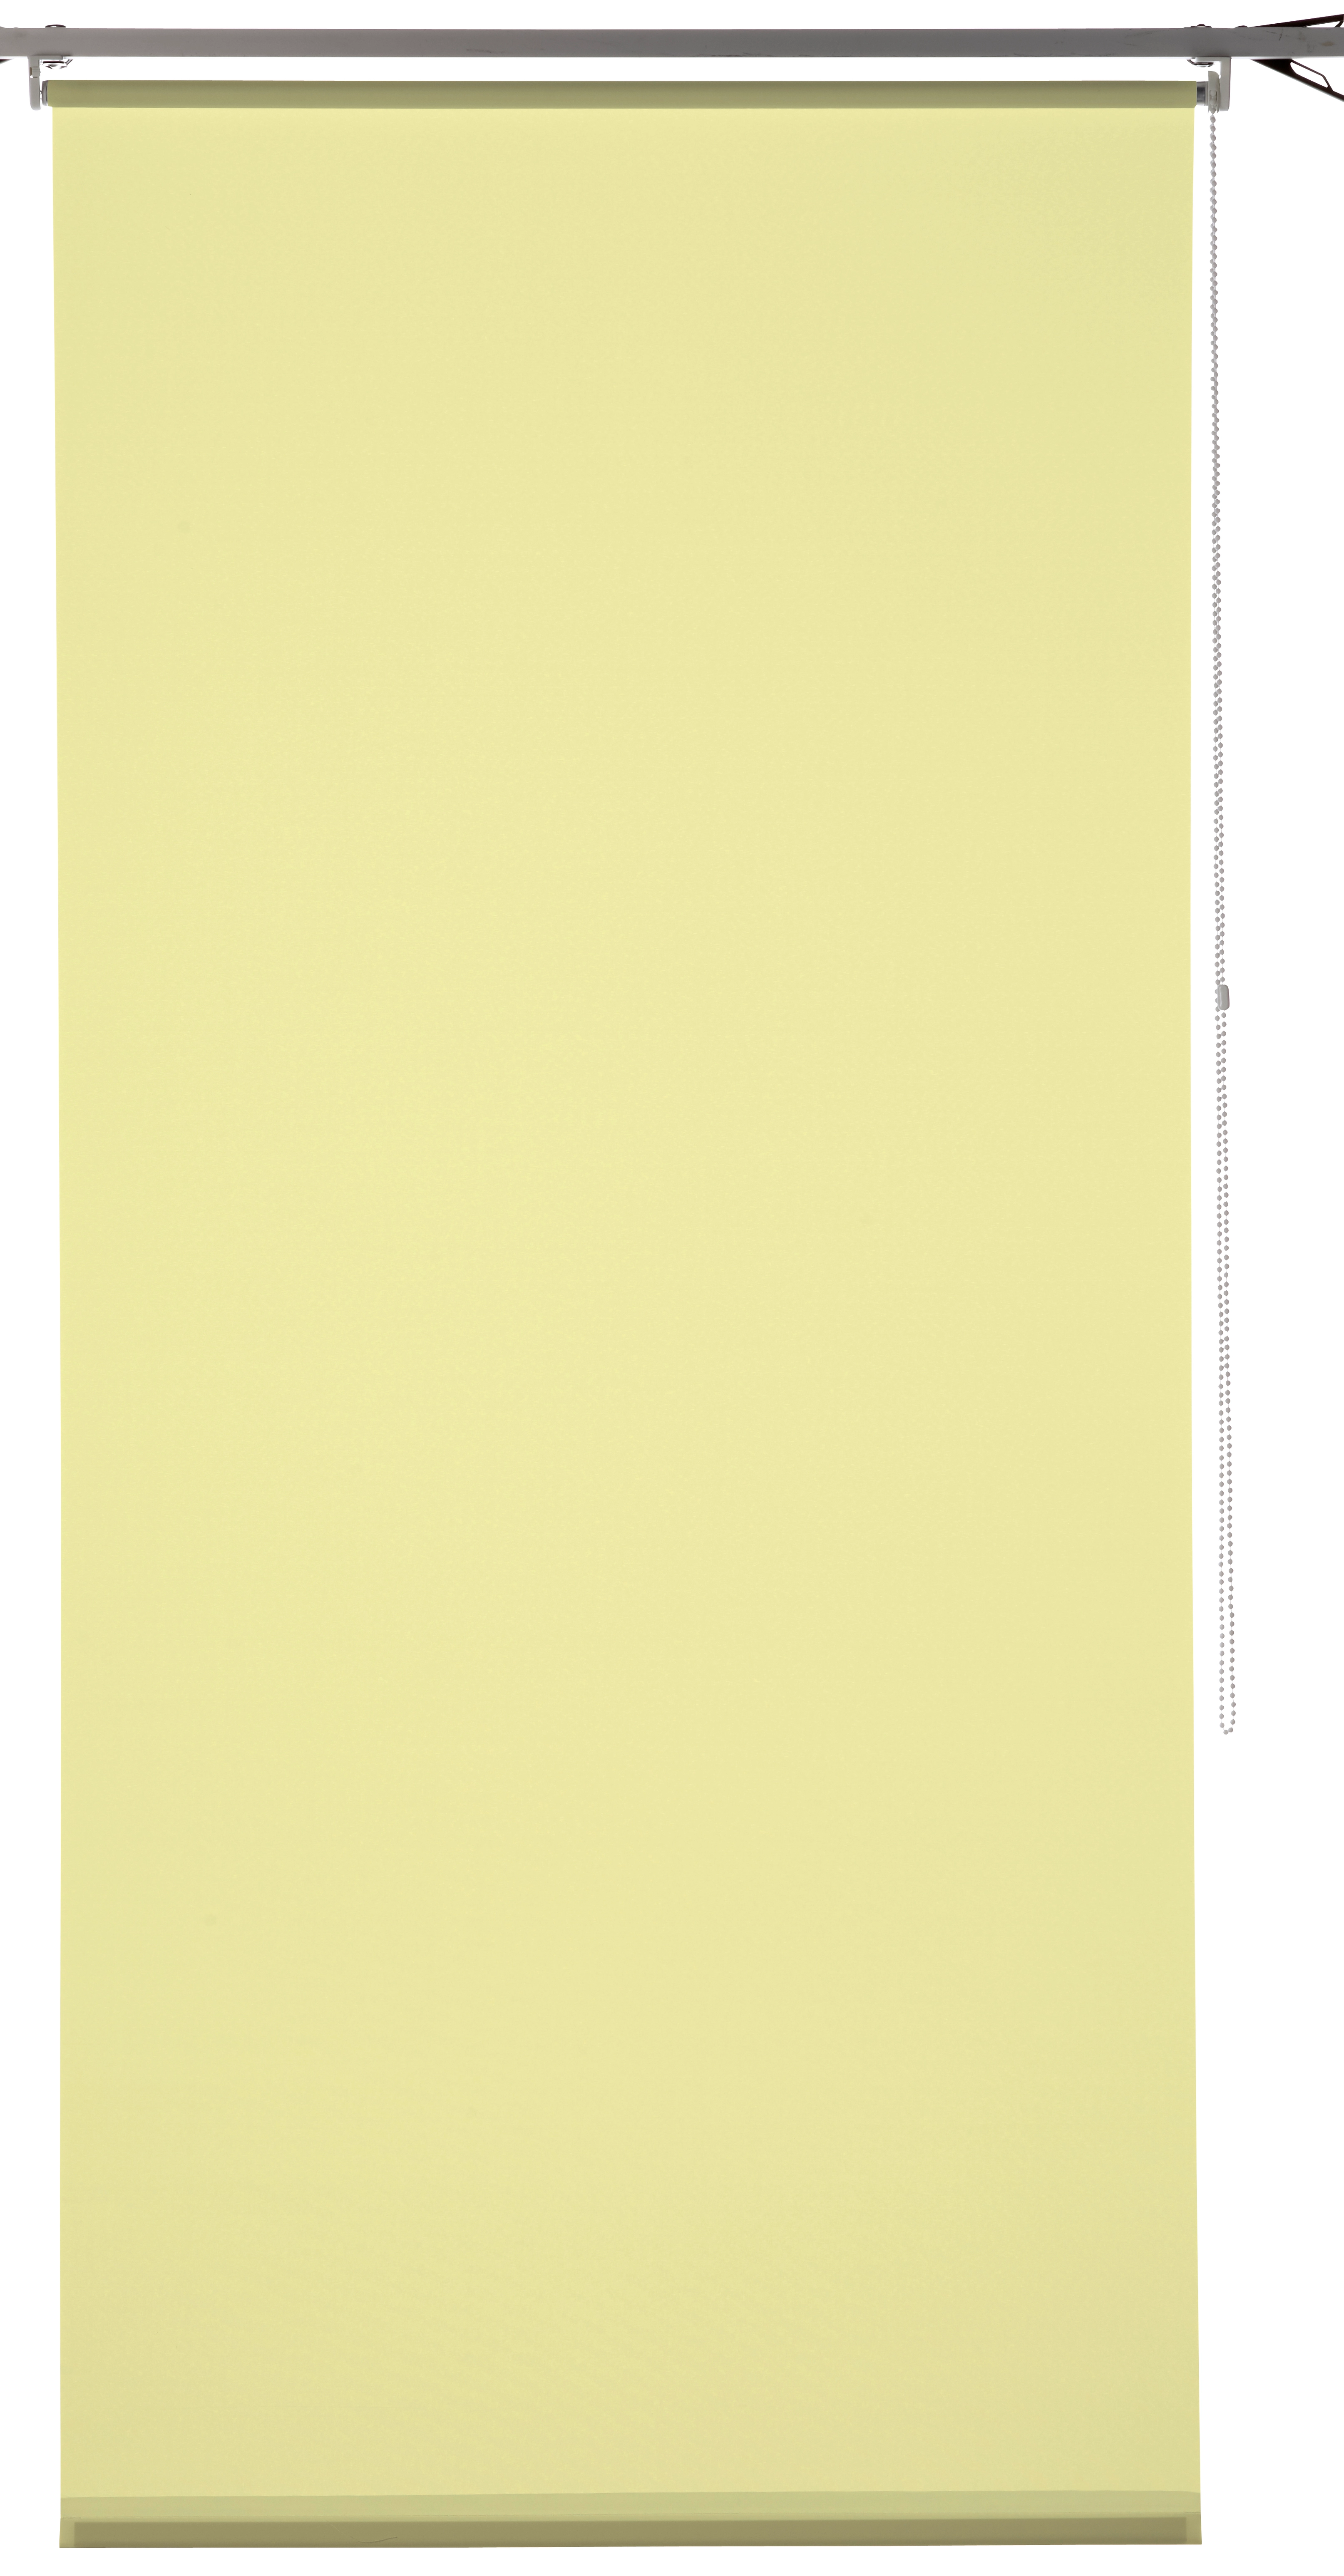 OBI Sonnenschutz-Rollo Sagunto 45 cm x 175 cm Gelb kaufen bei OBI